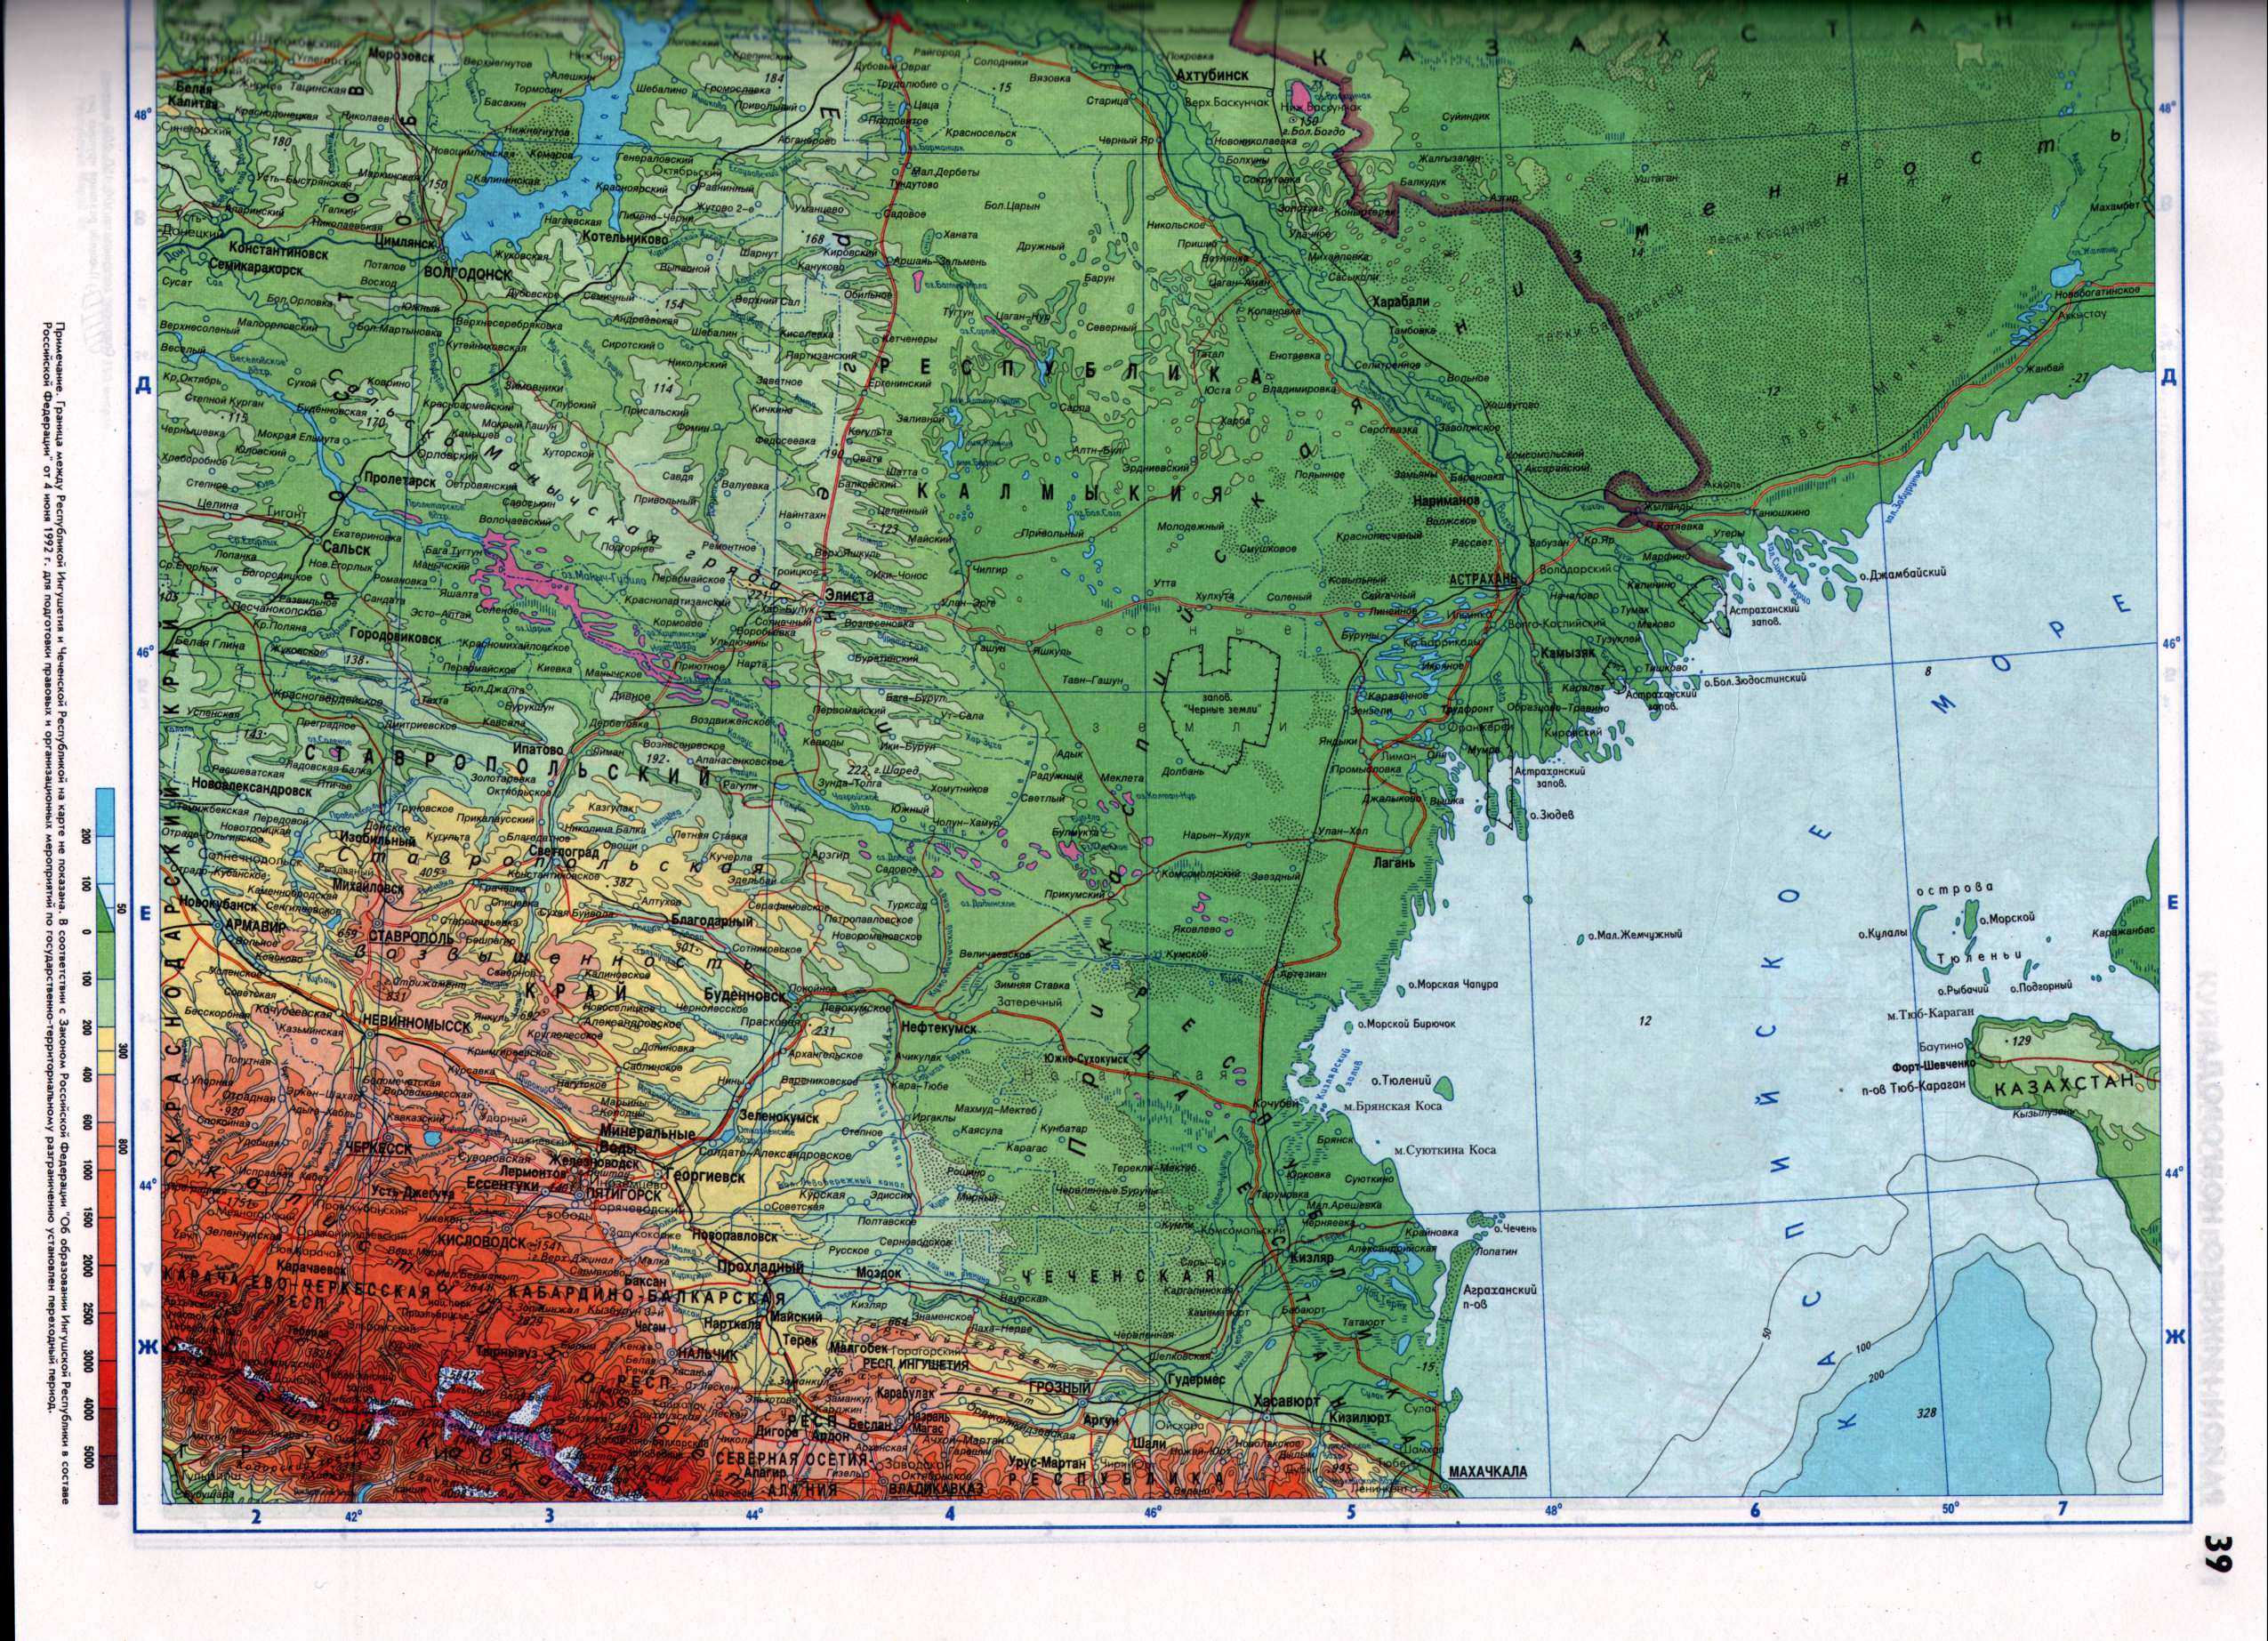 Карта нижнего Поволжья. Физическая карта нижнего Поволжья масштаба 1см:10км от Ульяновска до Астрахани. Скачать карту Поволжья, A1 - 